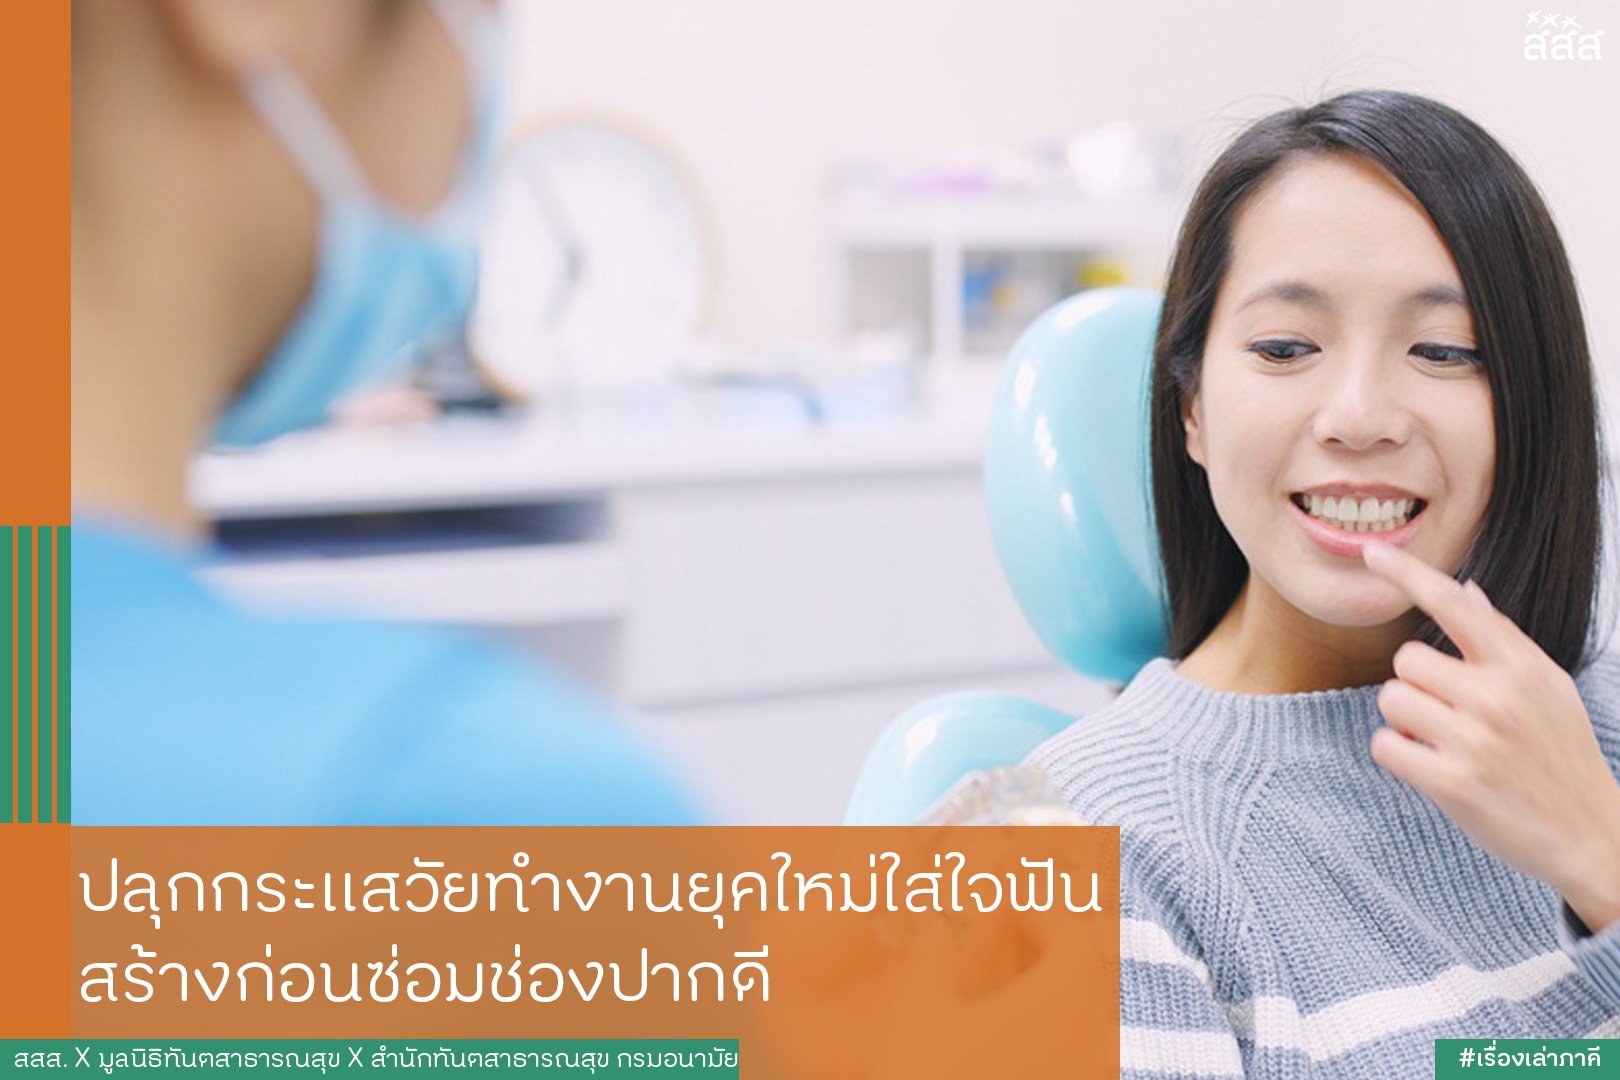 ปลุกกระแสวัยทำงานยุคใหม่ใส่ใจฟัน สร้างก่อนซ่อมช่องปากดี thaihealth